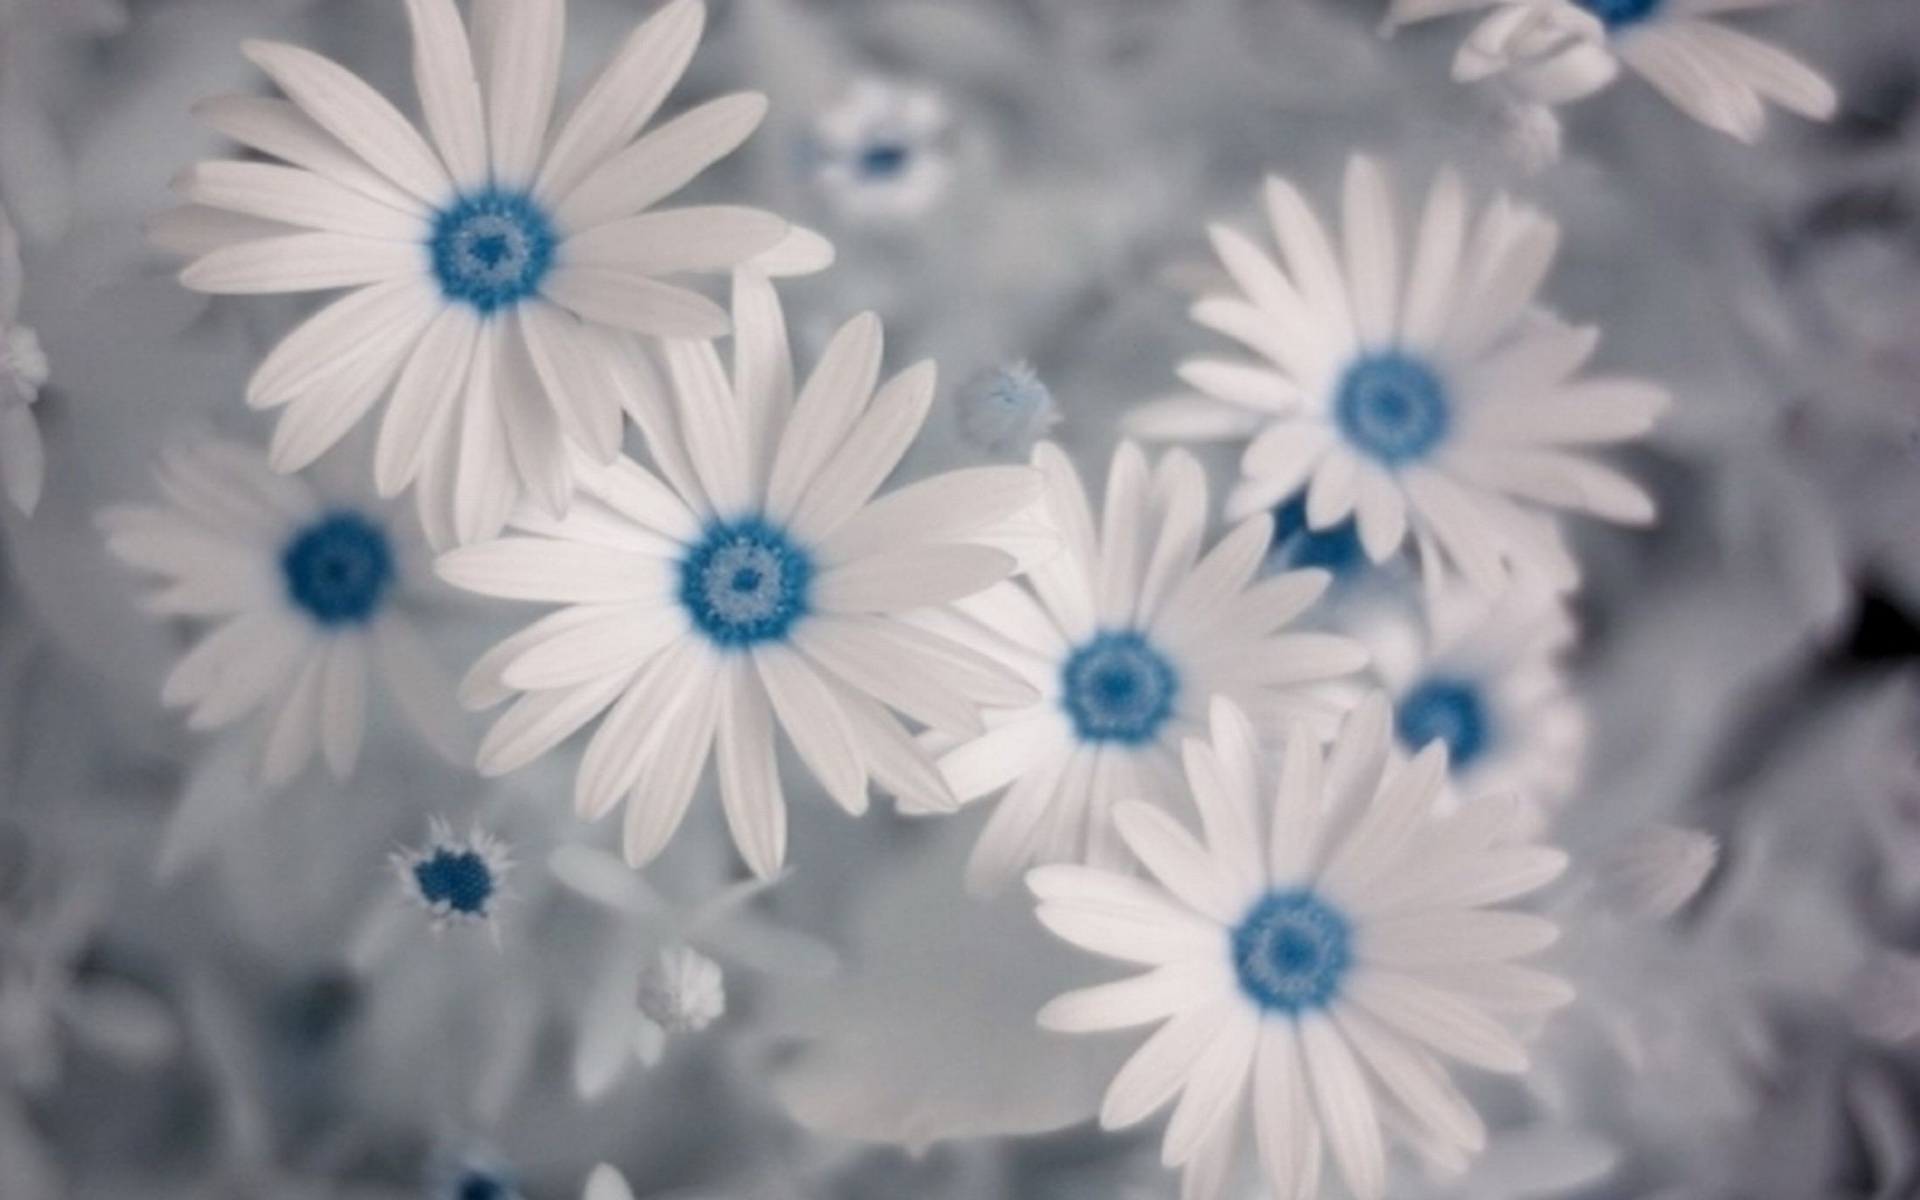 Tìm kiếm một hình nền hoa đẹp để làm mới màn hình điện thoại hoặc máy tính của bạn? Chiêm ngưỡng hình ảnh liên quan và được hòa mình vào màu sắc tươi tốt của những bông hoa đầy sức sống. Điều này sẽ đem đến sự vui vẻ và hạnh phúc cho bạn.